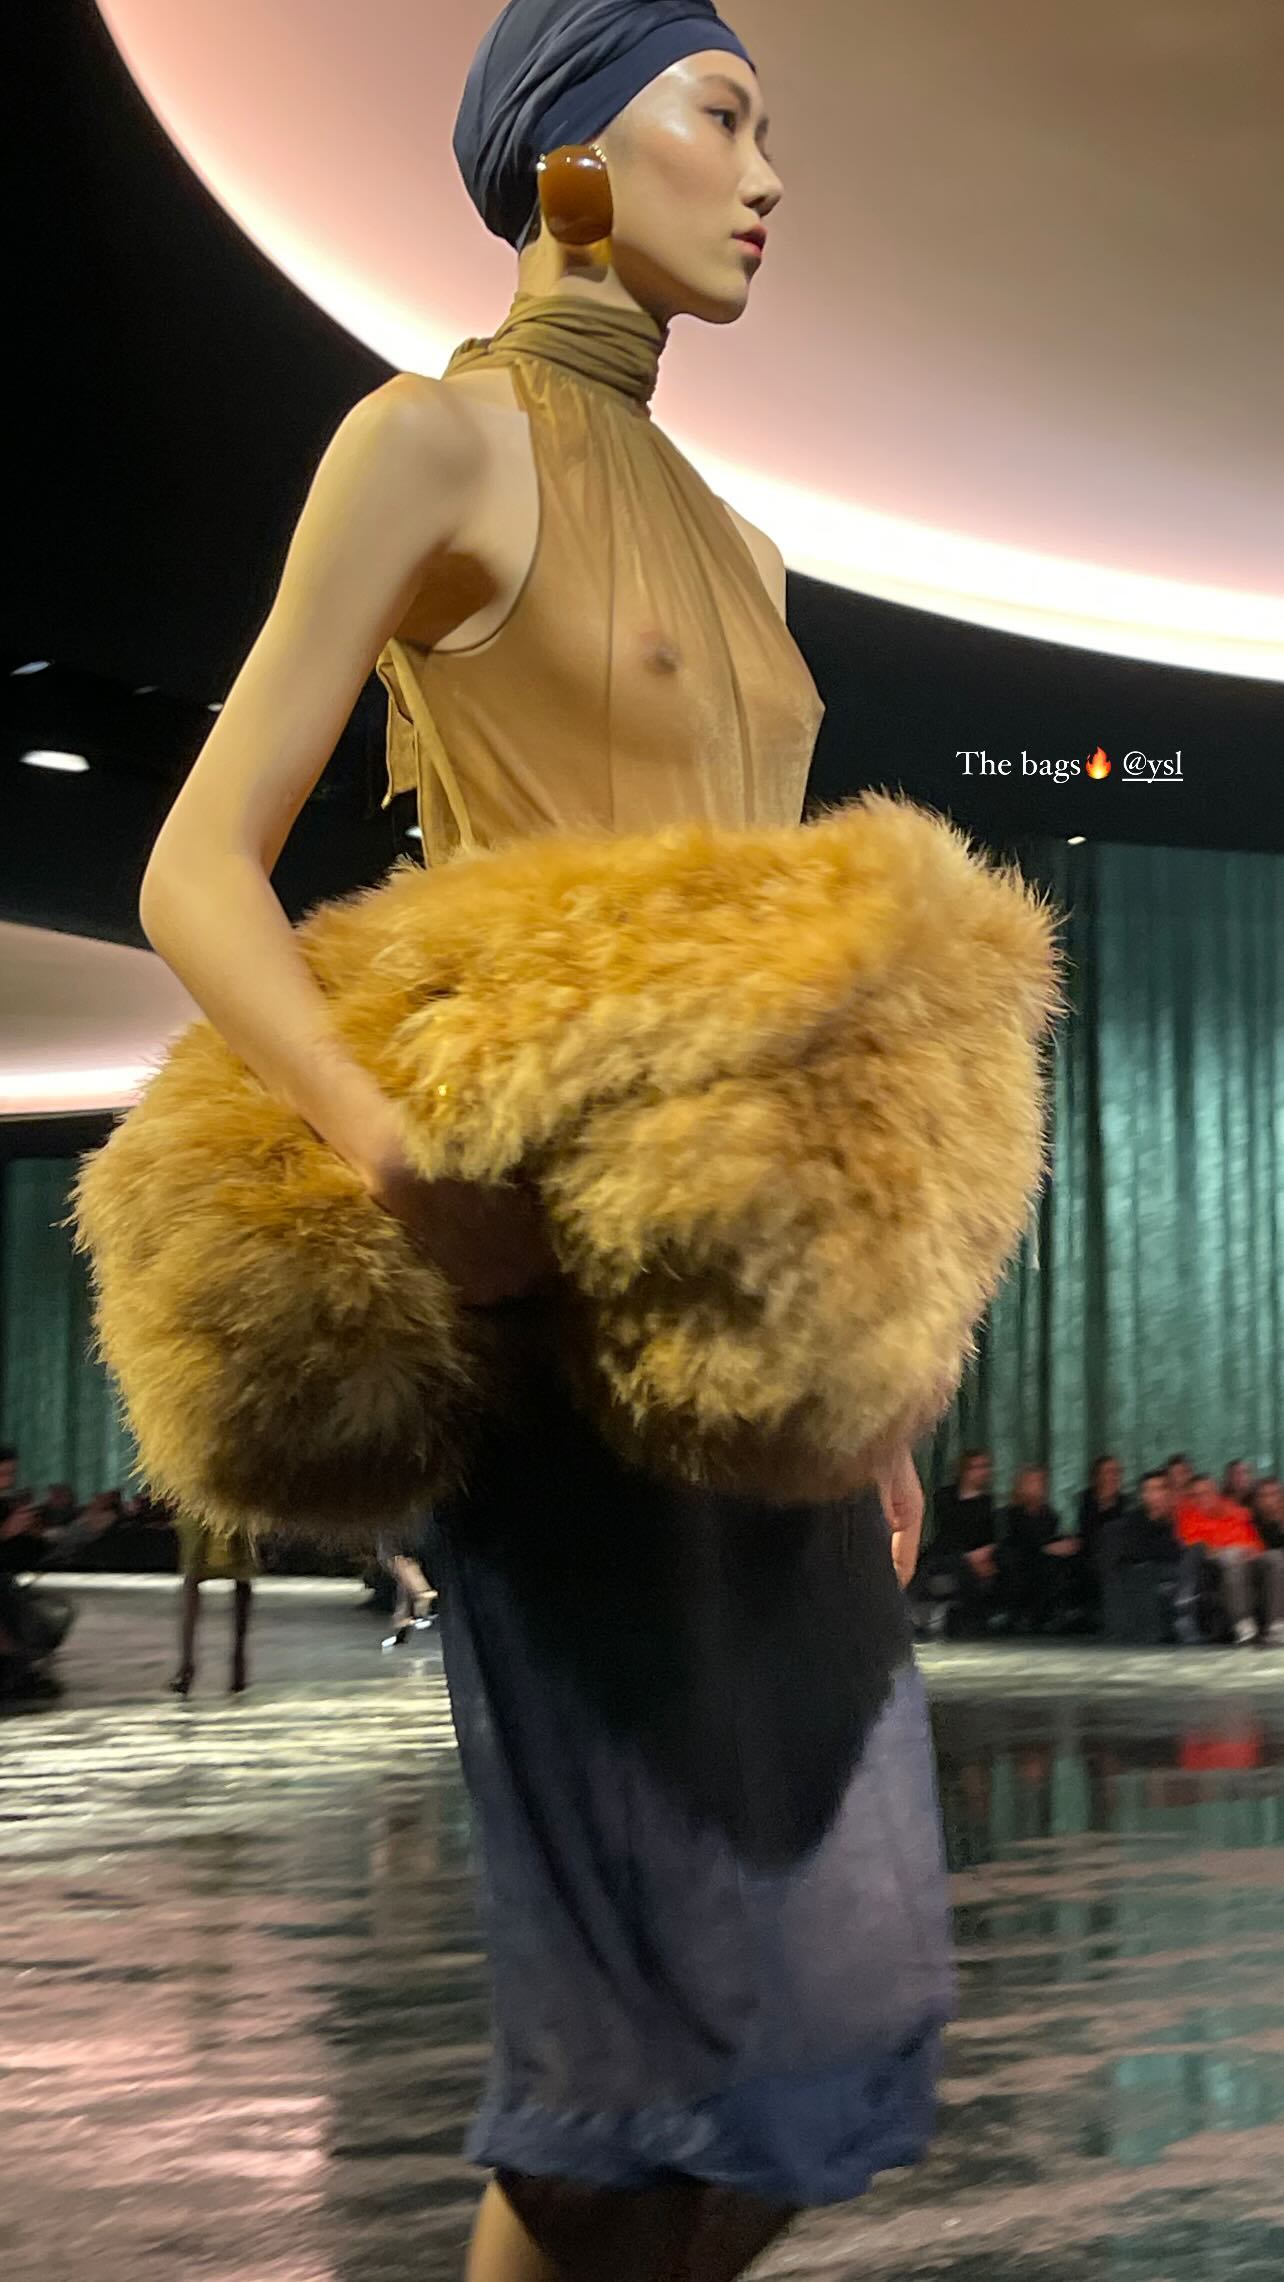 Эльза Хоск появилась на модном показе в прозрачной блузке. Топ фото и видео с показа в Париже, где моделям не понадобилось нижнее бельё